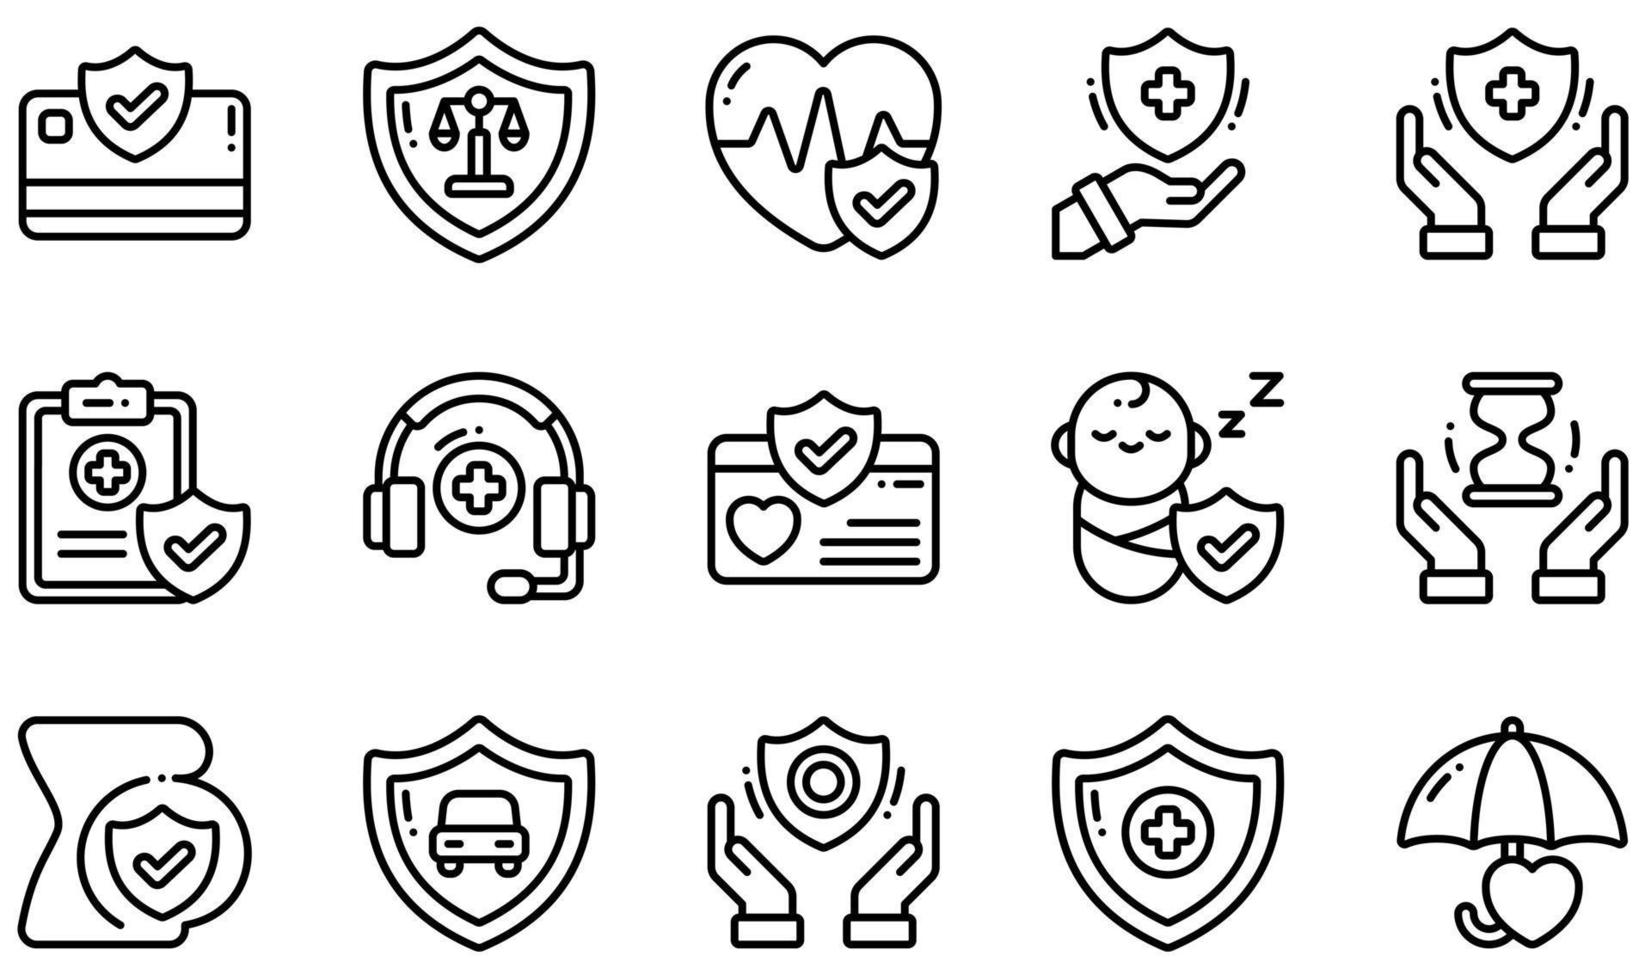 uppsättning vektor ikoner relaterade till sjukförsäkring. innehåller sådana ikoner som försäkringsbetalning, livförsäkring, sjukförsäkring, journal, pediatrisk, säker och mer.